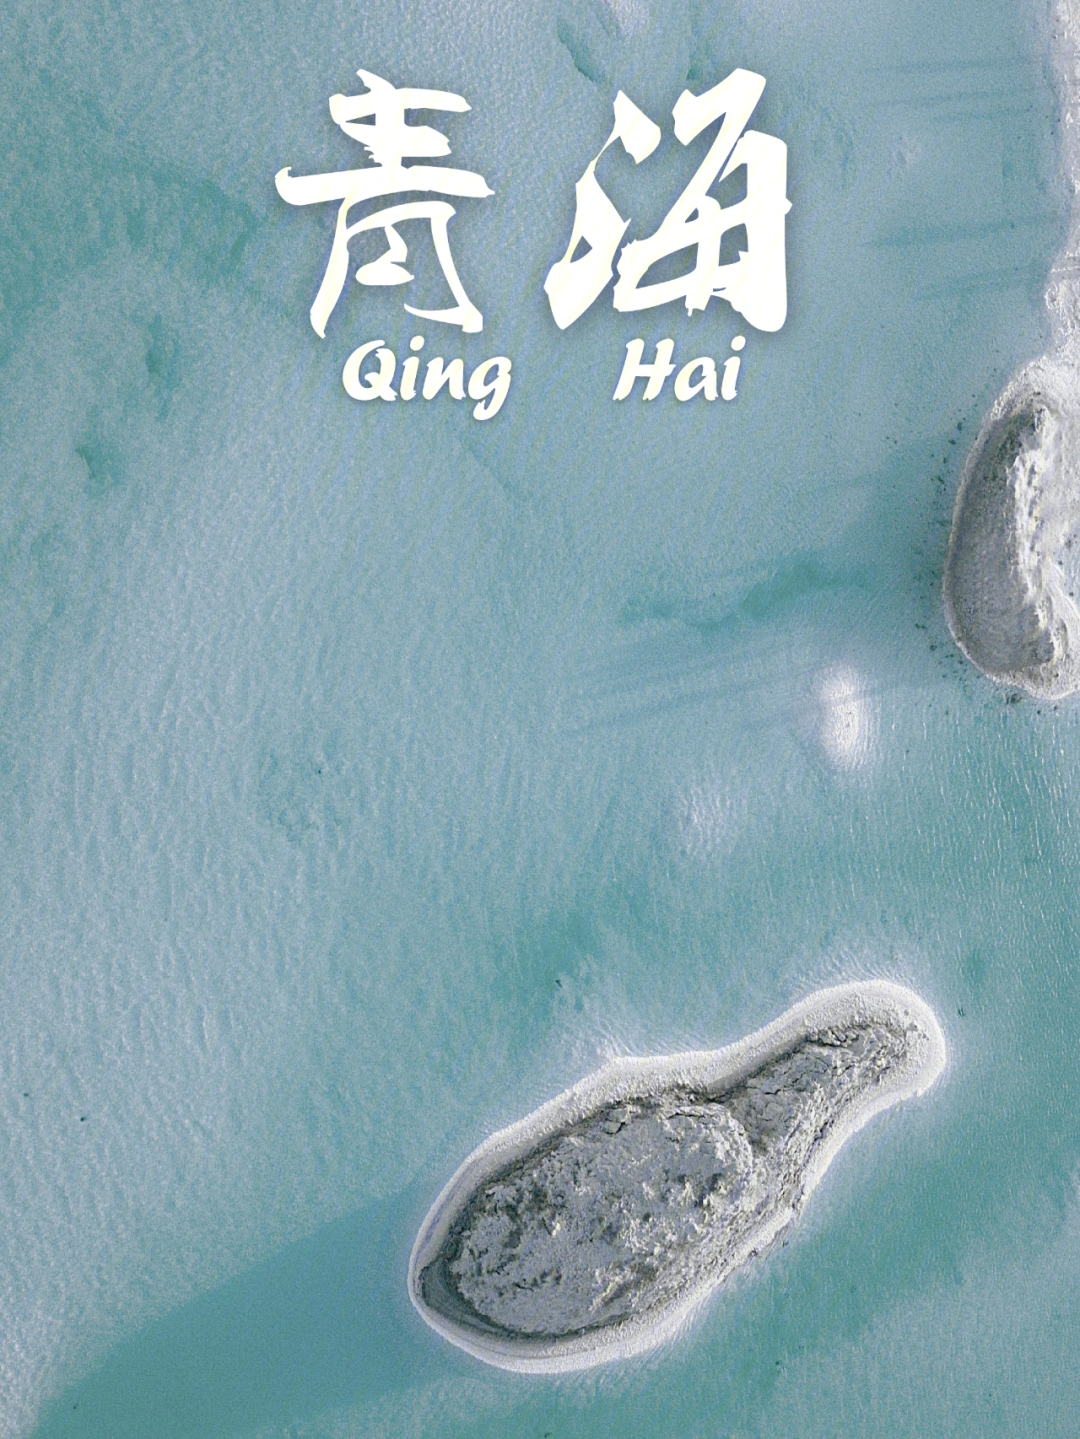 青甘大环线旅游海报图片